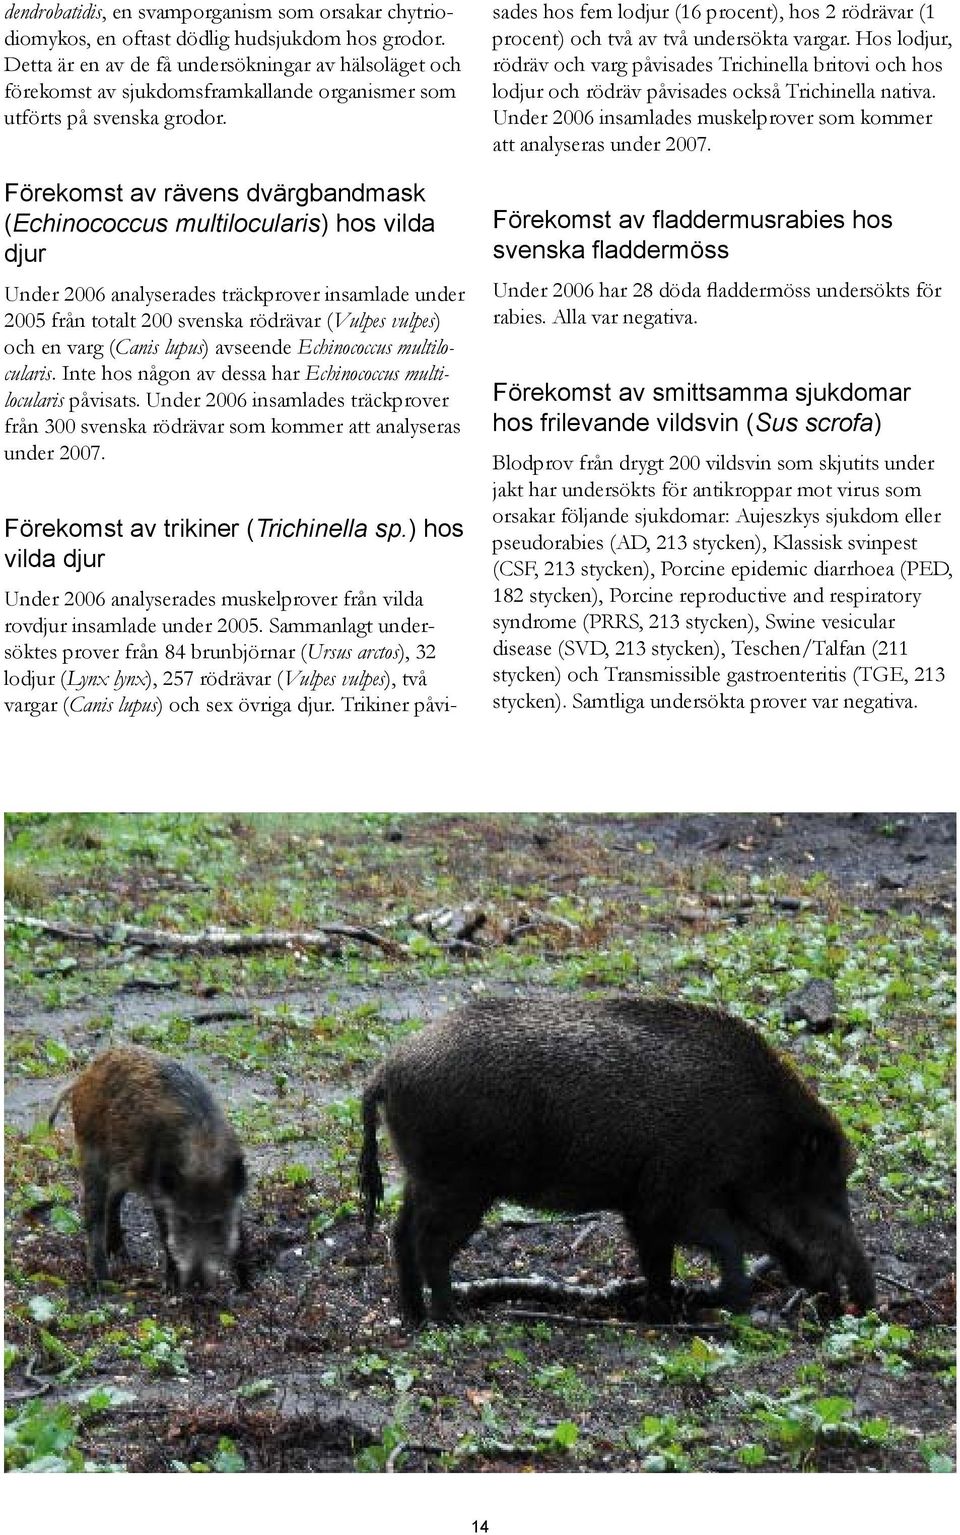 Förekomst av rävens dvärgbandmask (Echinococcus multilocularis) hos vilda djur Under 2006 analyserades träckprover insamlade under 2005 från totalt 200 svenska rödrävar (Vulpes vulpes) och en varg